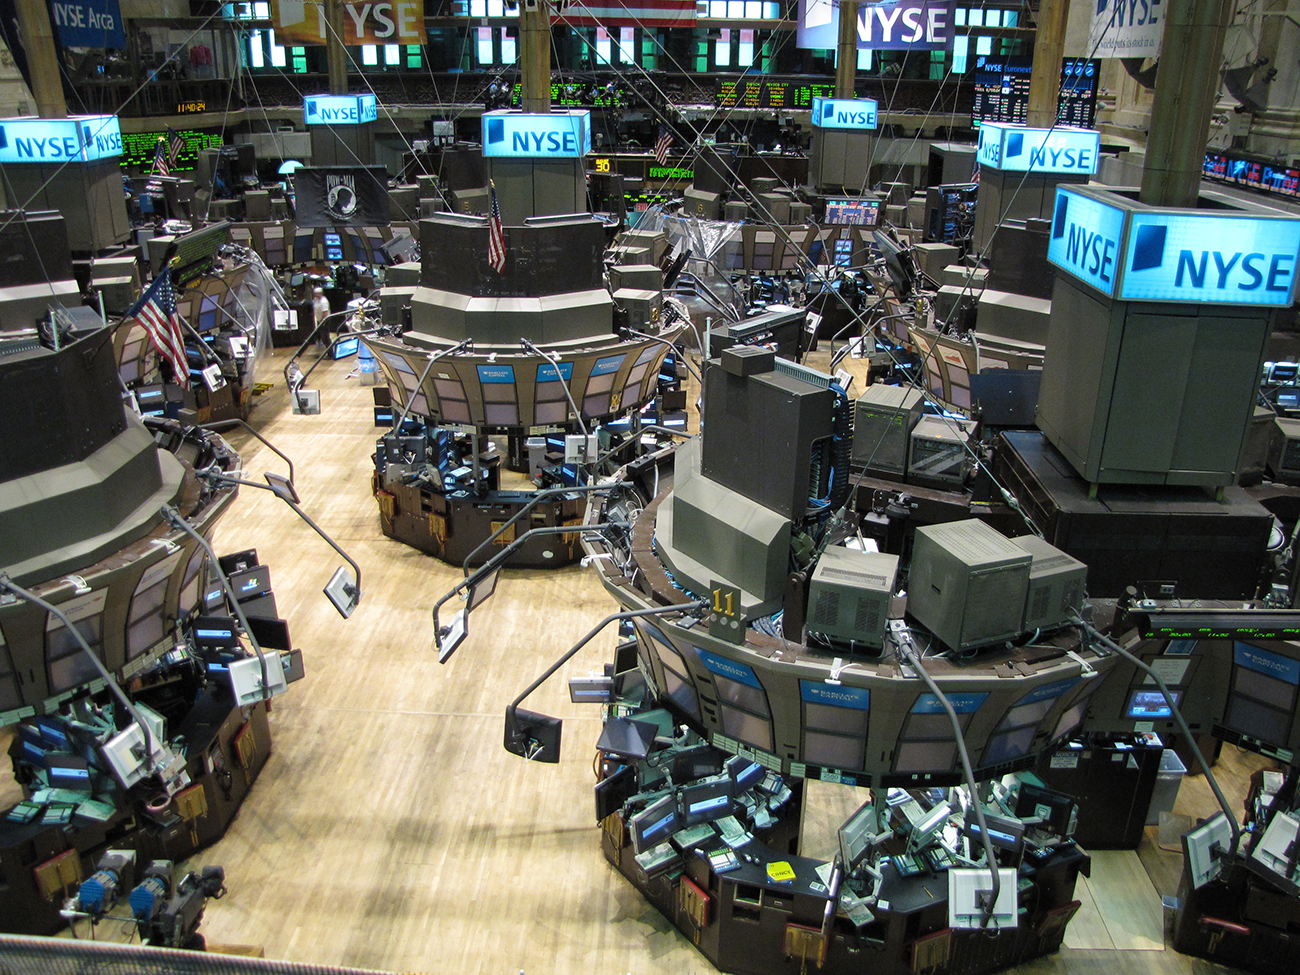 تظهر صورة بورصة نيويورك. تحتوي المنطقة الداخلية على العديد من المحطات، كل منها مغطى بأجهزة الكمبيوتر وشاشات العرض. توجد في الخلفية شاشات تعرض الأسهم والأسعار.